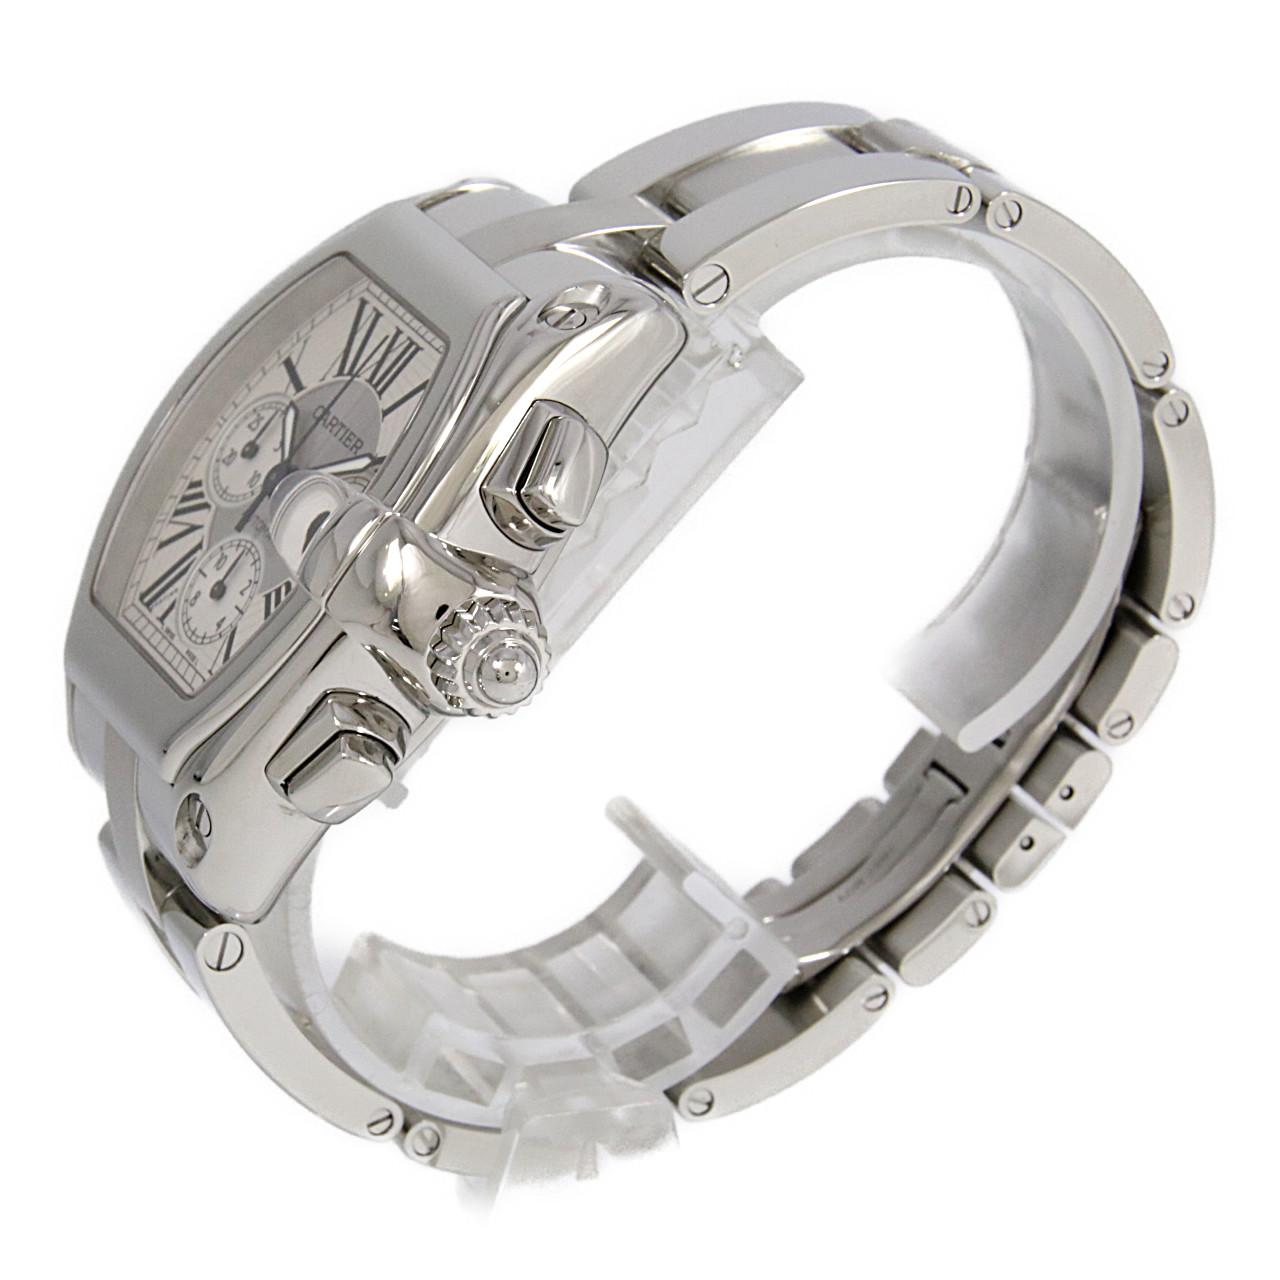 カルティエ CARTIER W62019X6 シルバー メンズ 腕時計